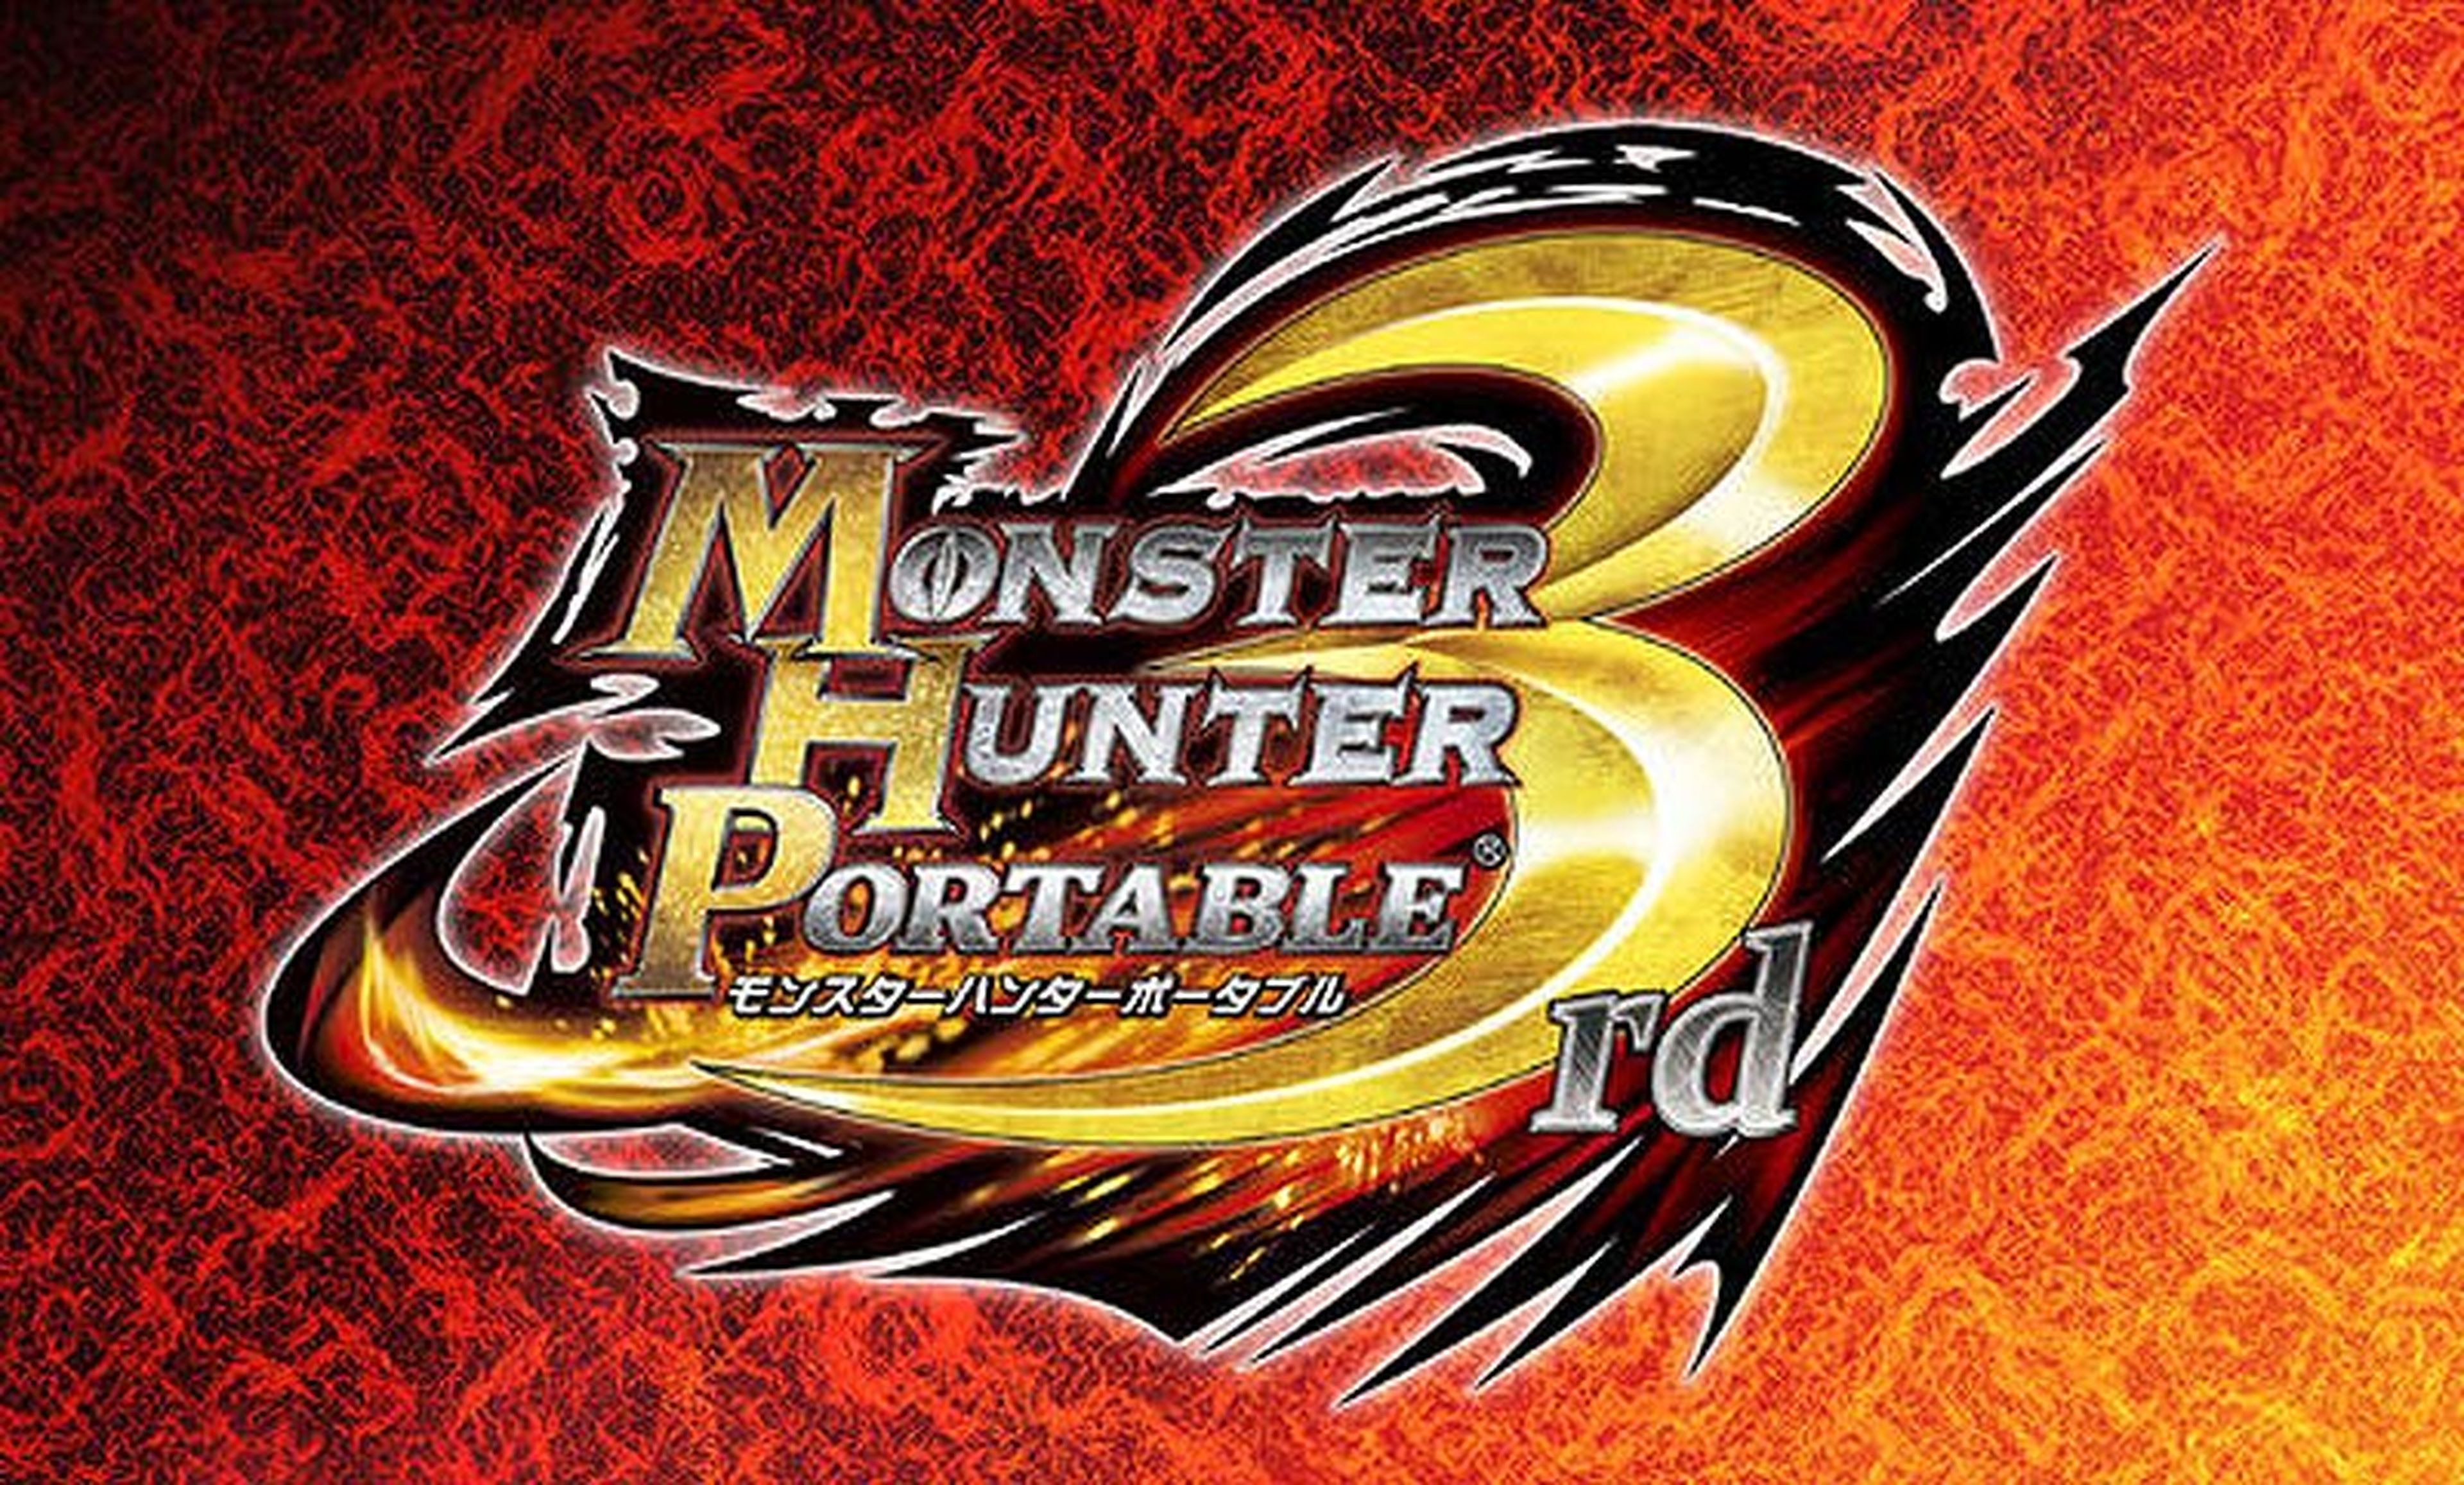 Sorpresas en Monster Hunter Portable 3rd